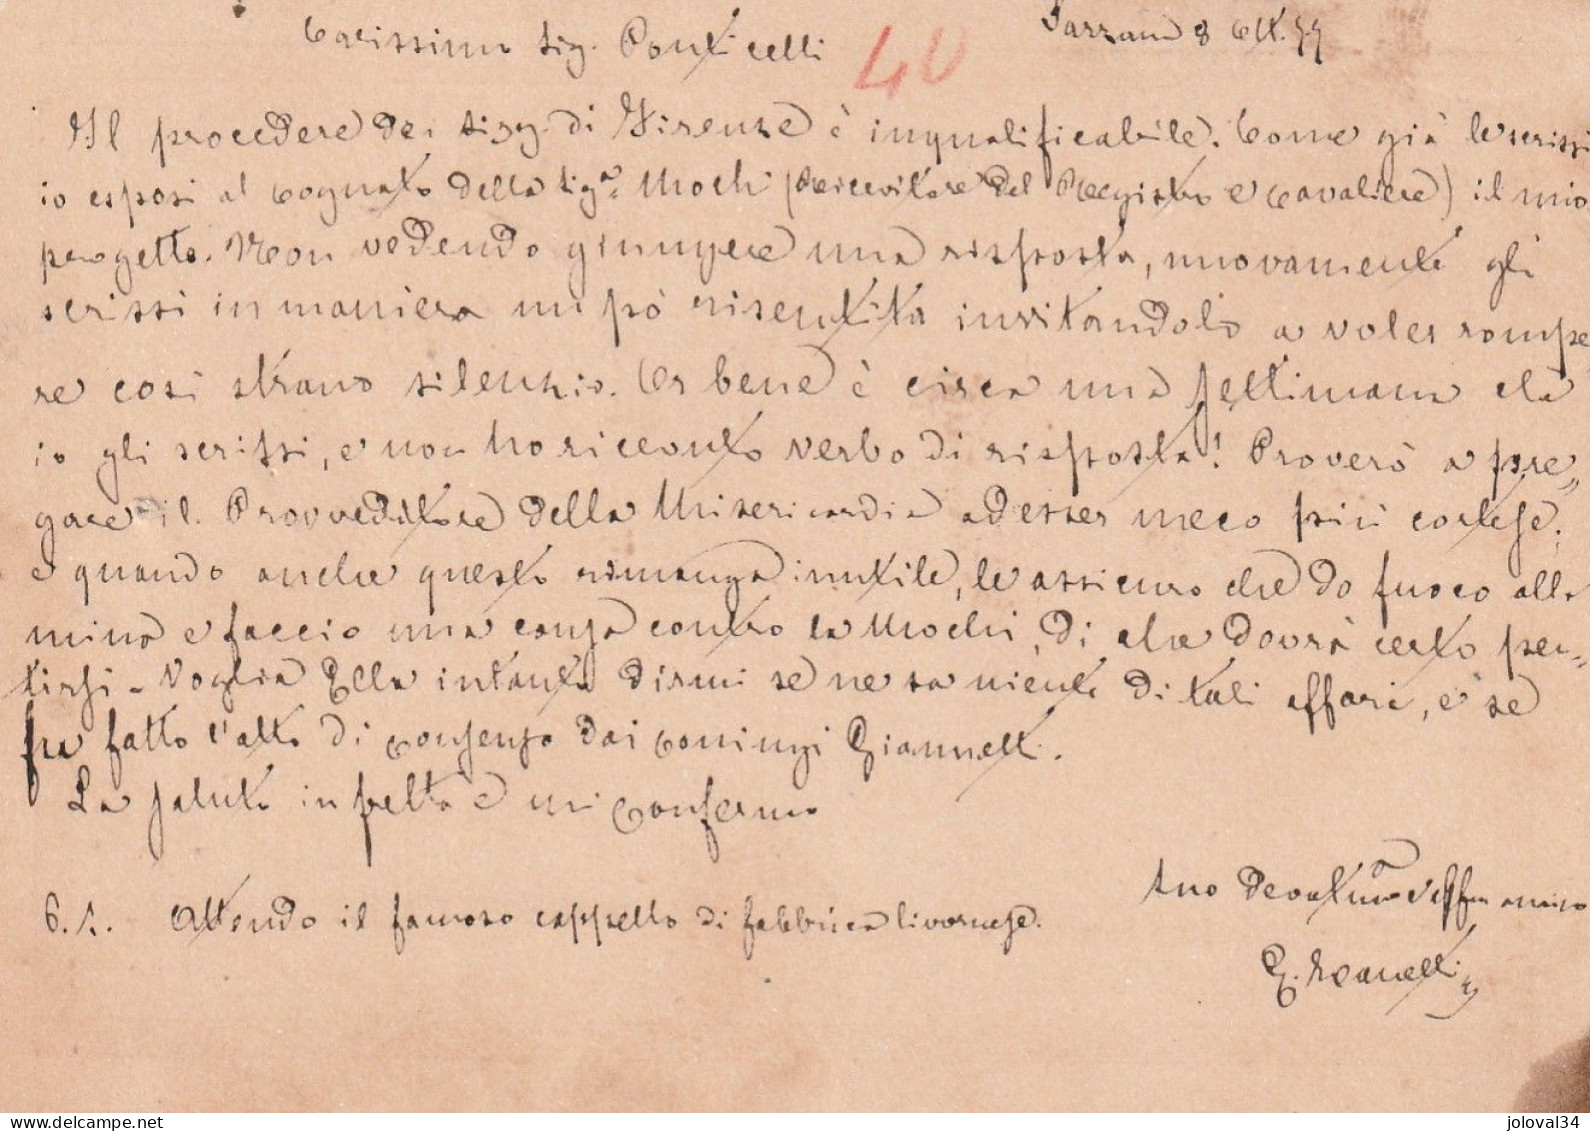 Italie Entier Postal SARZANA  8/10/1877  Pour Grosseto - Entiers Postaux